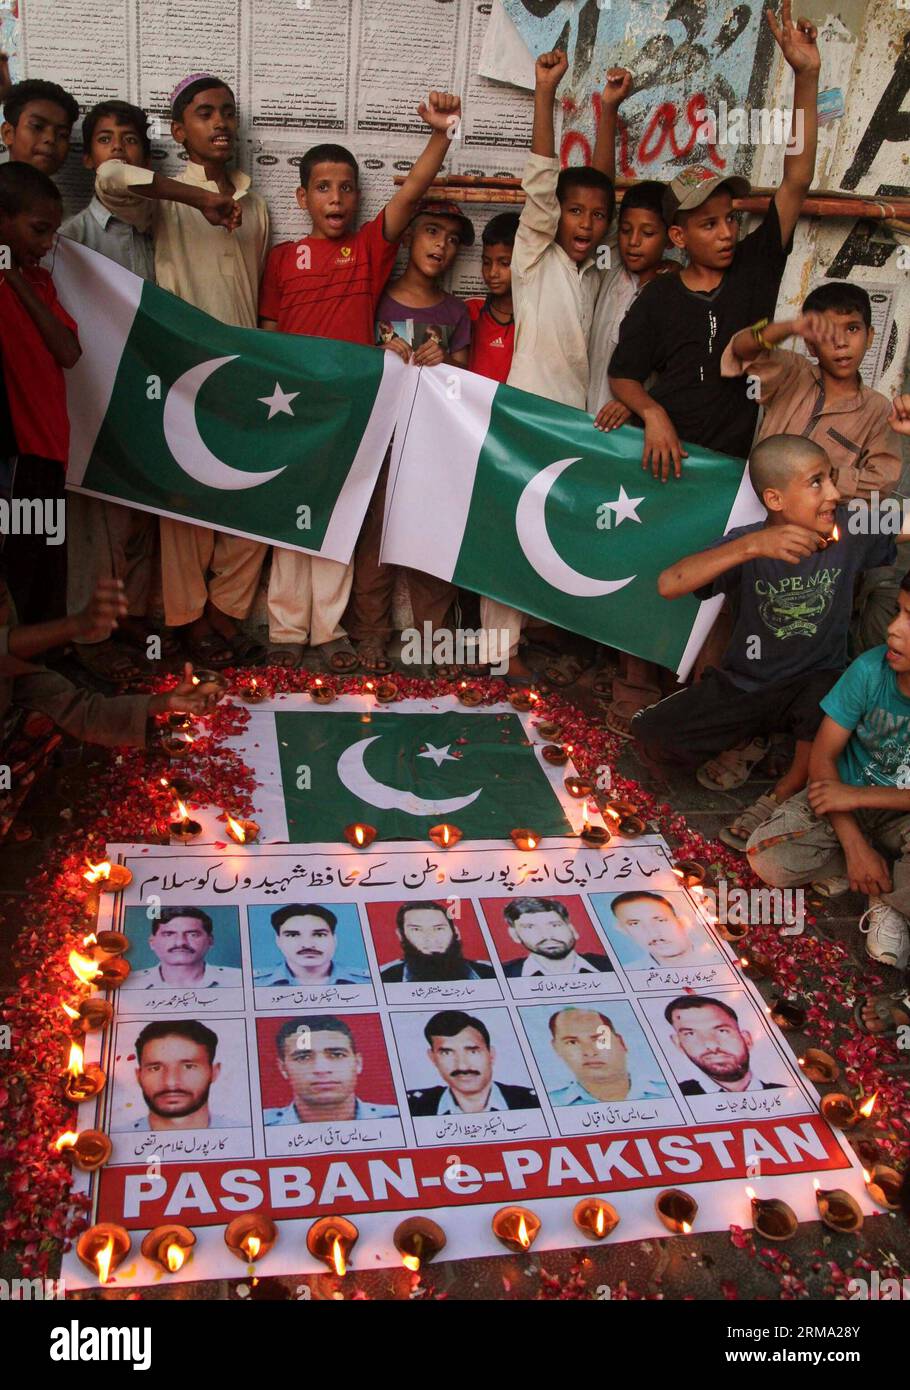 (140611) -- KARACHI, 11 juin 2014 (Xinhua) -- des Pakistanais se sont rassemblés autour de photos de responsables de la sécurité qui ont donné leur vie lors d'une attaque de militants contre l'aéroport de Karachi lors d'une cérémonie de veillée dans la ville portuaire de Karachi, dans le sud du Pakistan, le 11 juin 2014. Au moins 38 personnes, dont 10 militants, ont été tuées dans l'attaque de l'aéroport international Jinnah de Karachi tard dimanche soir. (Xinhua/Arshad) (cy) PAKISTAN-KARACHI-ATTACK-MOUORNING PUBLICATIONxNOTxINxCHN Karachi juin 11 2014 des célébrités pakistanaises de XINHUA se sont rassemblées autour de photos de responsables de la sécurité qui ont donné leur vie dans l'attaque militante O. Banque D'Images